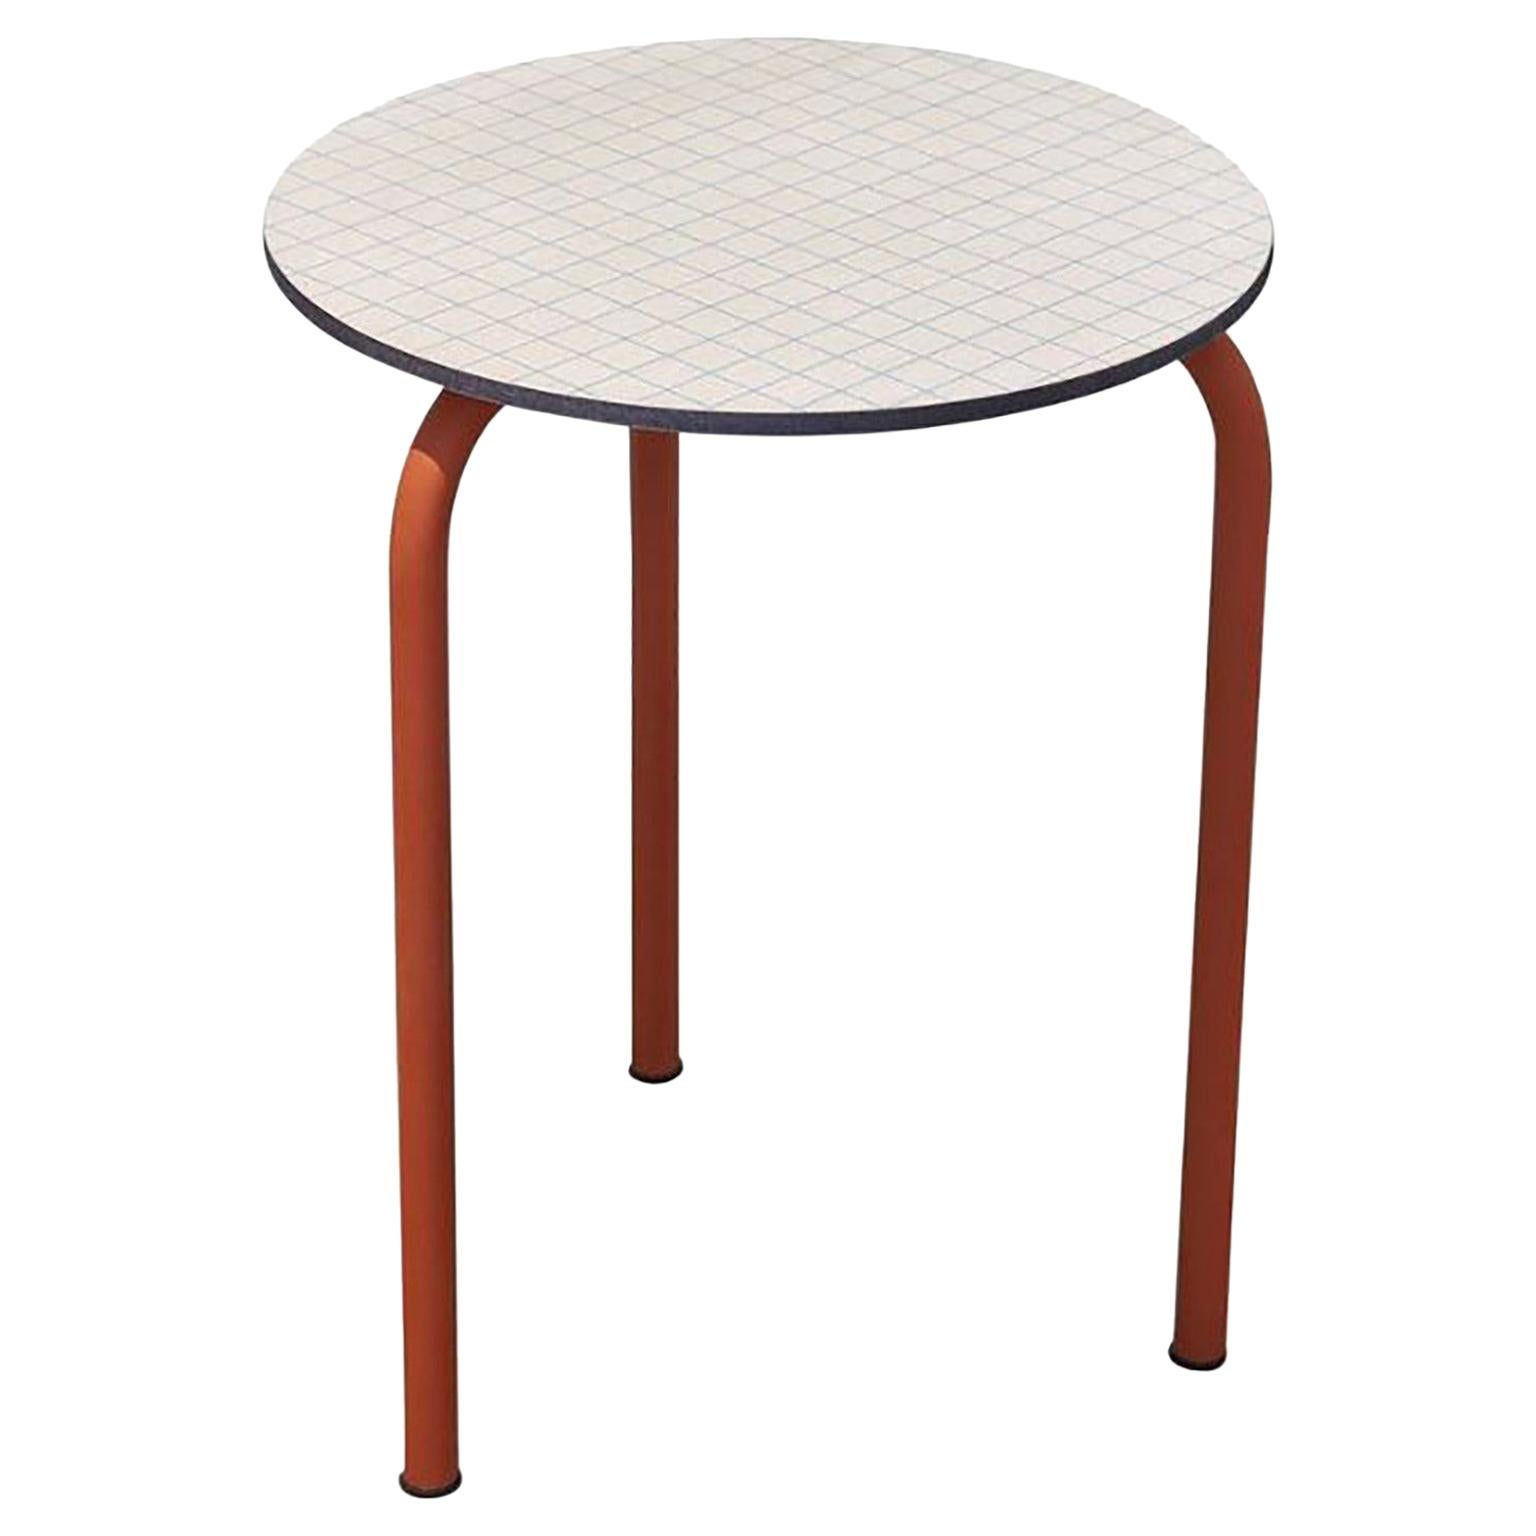 Petite table contemporaine Texture de surface à carreaux imprimée:: inspirée du Bauhaus